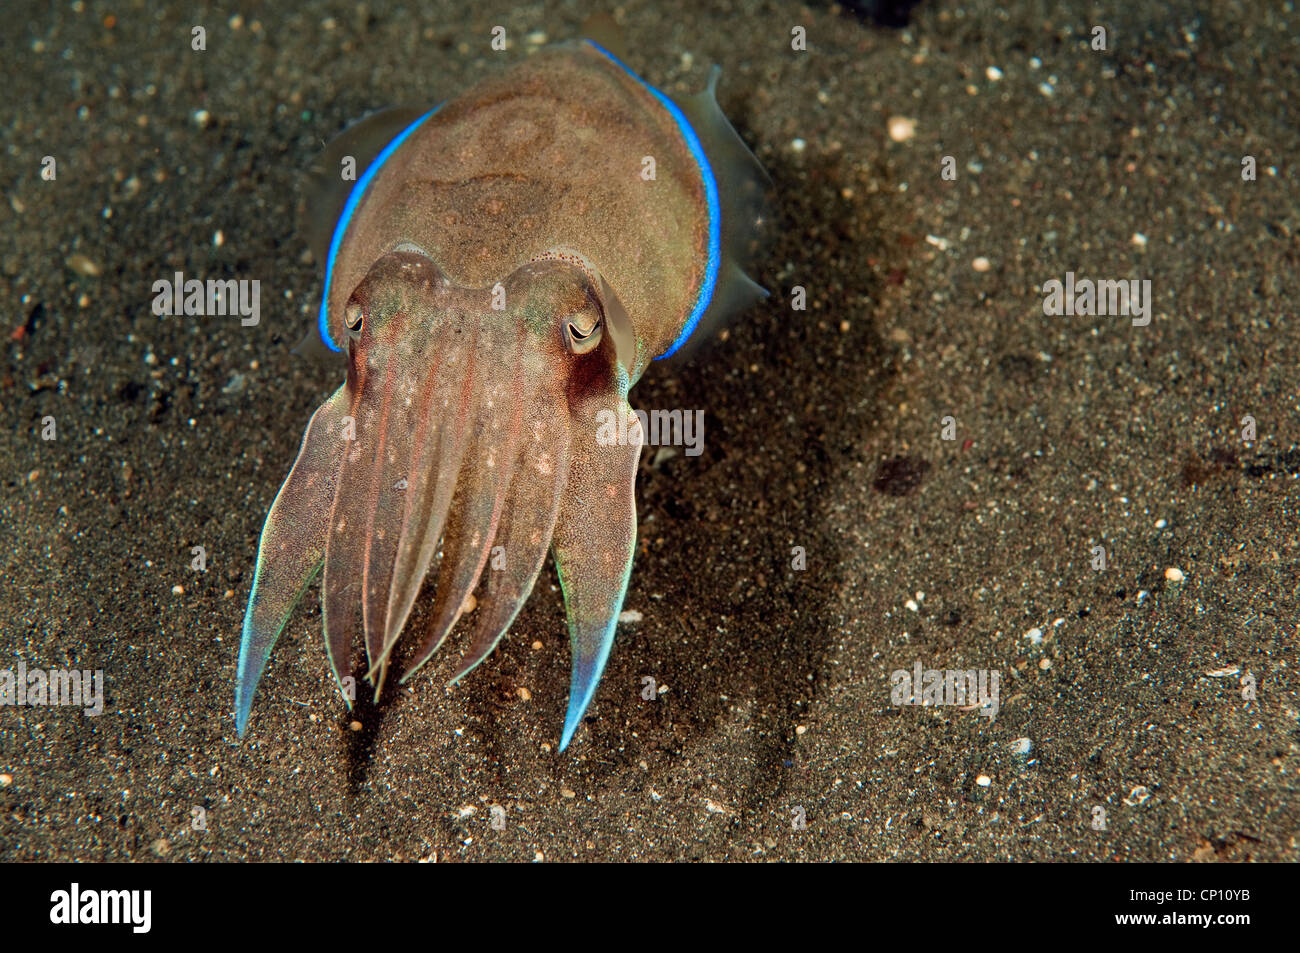 Cuttlefish, Sepia esculenta, Sulawesi Indonesia Stock Photo